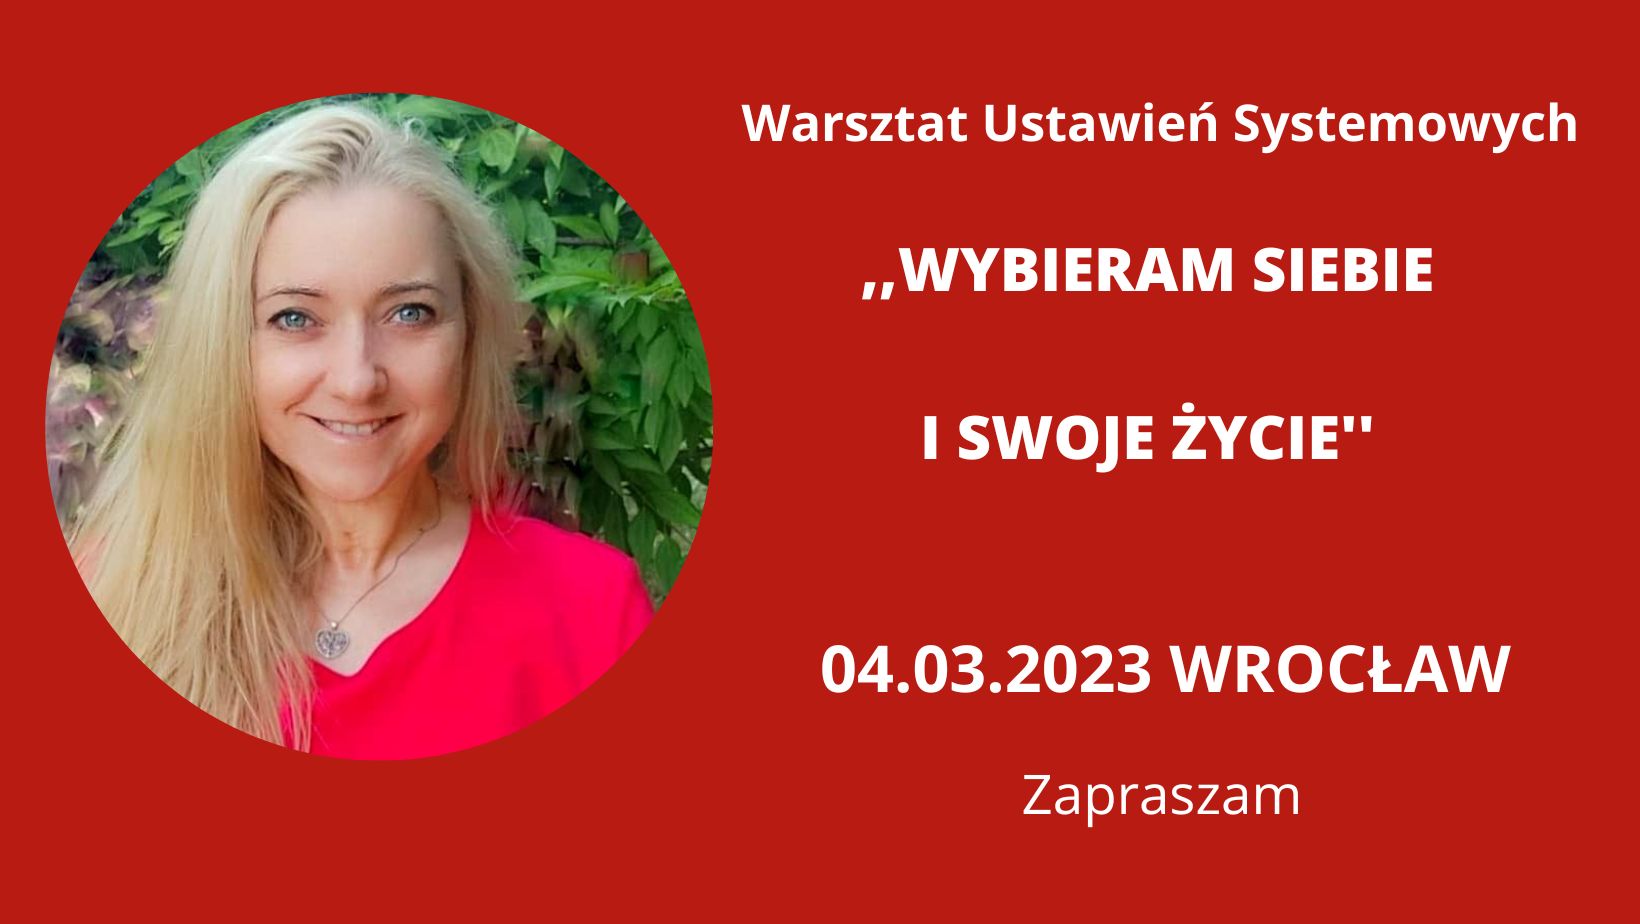 You are currently viewing 04.03.2023 Wrocław ,,WYBIERAM SIEBIE I SWOJE ŻYCIE” Warsztat Ustawień Systemowych